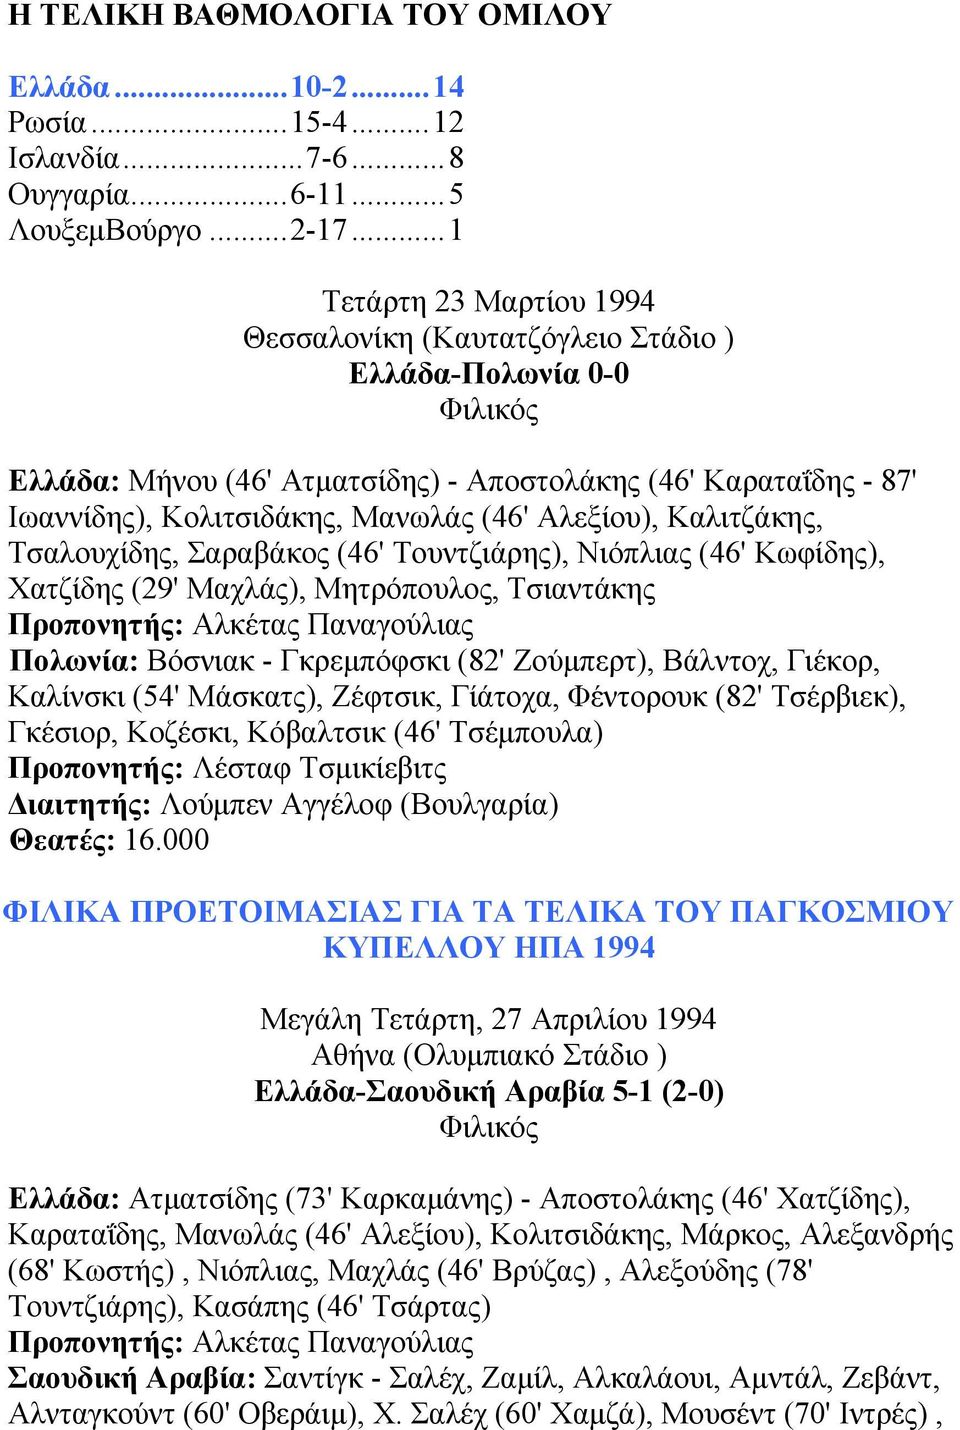 Καλιτζάκης, Τσαλουχίδης, Σαραβάκος (46' Τουντζιάρης), Νιόπλιας (46' Κωφίδης), Χατζίδης (29' Μαχλάς), Μητρόπουλος, Τσιαντάκης Πολωνία: Βόσνιακ - Γκρεµπόφσκι (82' Ζούµπερτ), Βάλντοχ, Γιέκορ, Καλίνσκι